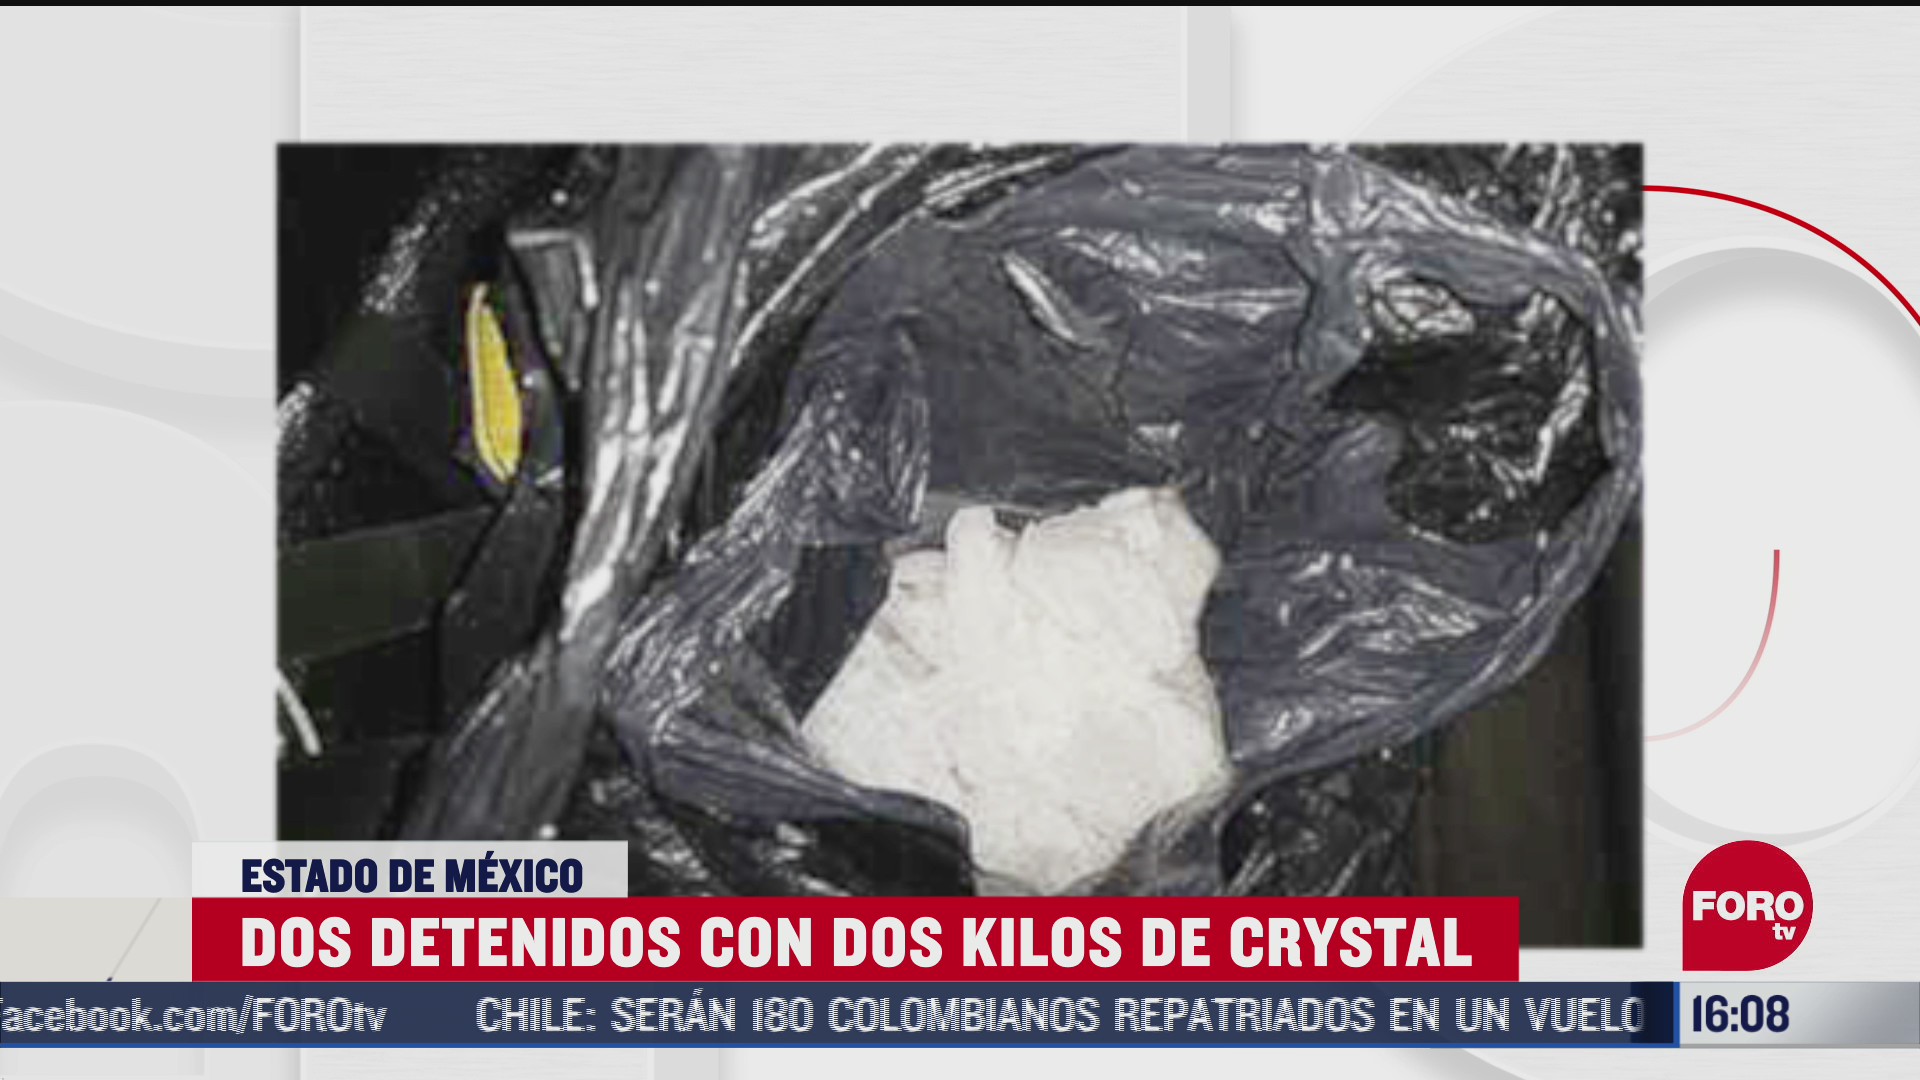 FOTO: 21 de junio 2020, detienen a dos personas con dos kilogramos de crystal